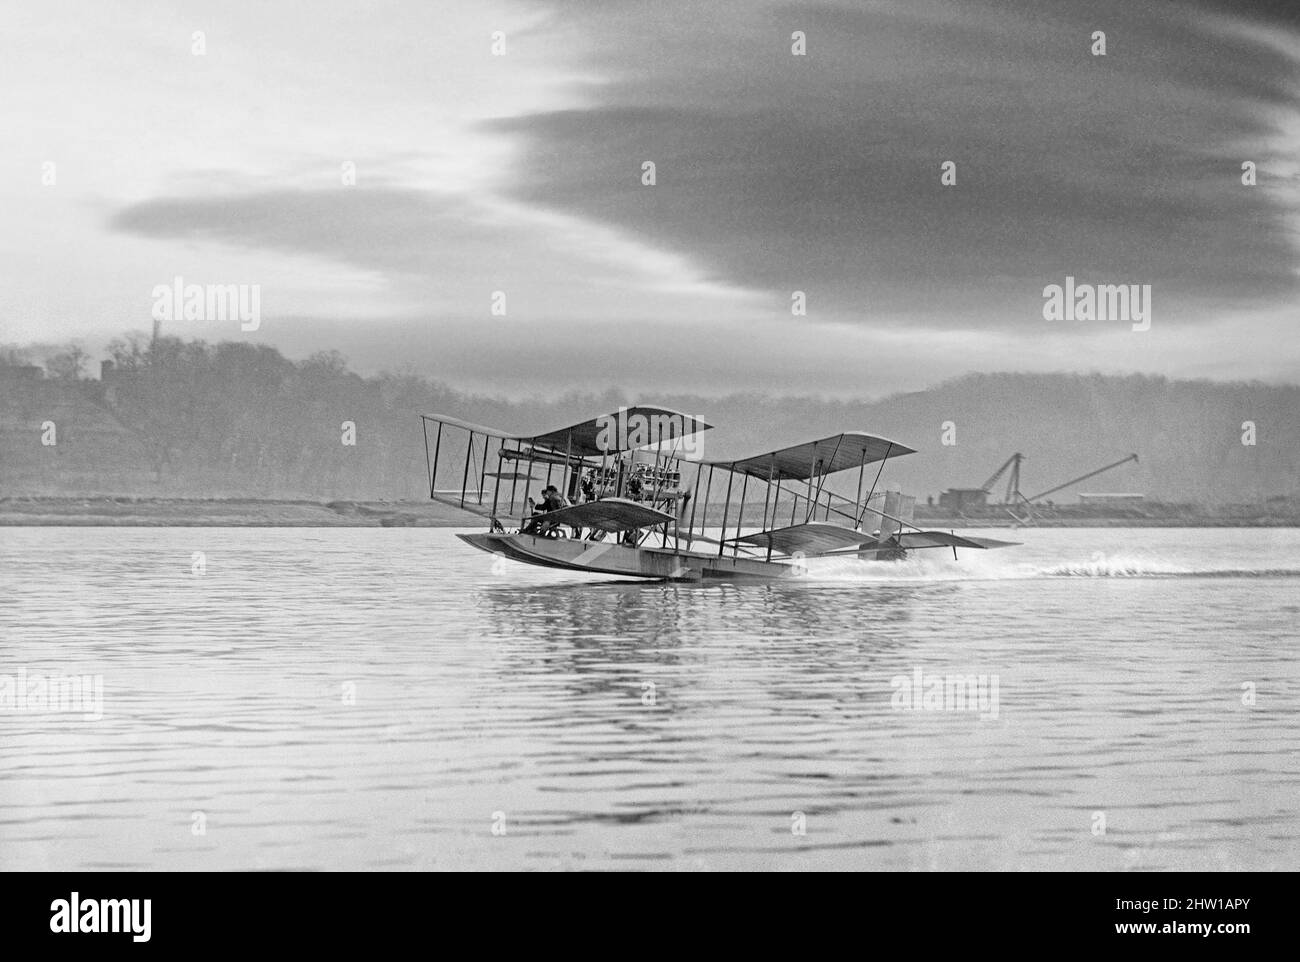 Una fotografia dei primi 20th secolo del Richardson Tandem biplanare Hydroplane che decollato dal fiume Potomac, Maryland, Stati Uniti d'America, nell'aprile 1916. Il pilota è probabilmente George Alphonso Gray, di solito descritto come un 'pioniere Wright aviatore'. Lui e sua moglie 'Jack' erano famosi barnstormers. Foto Stock